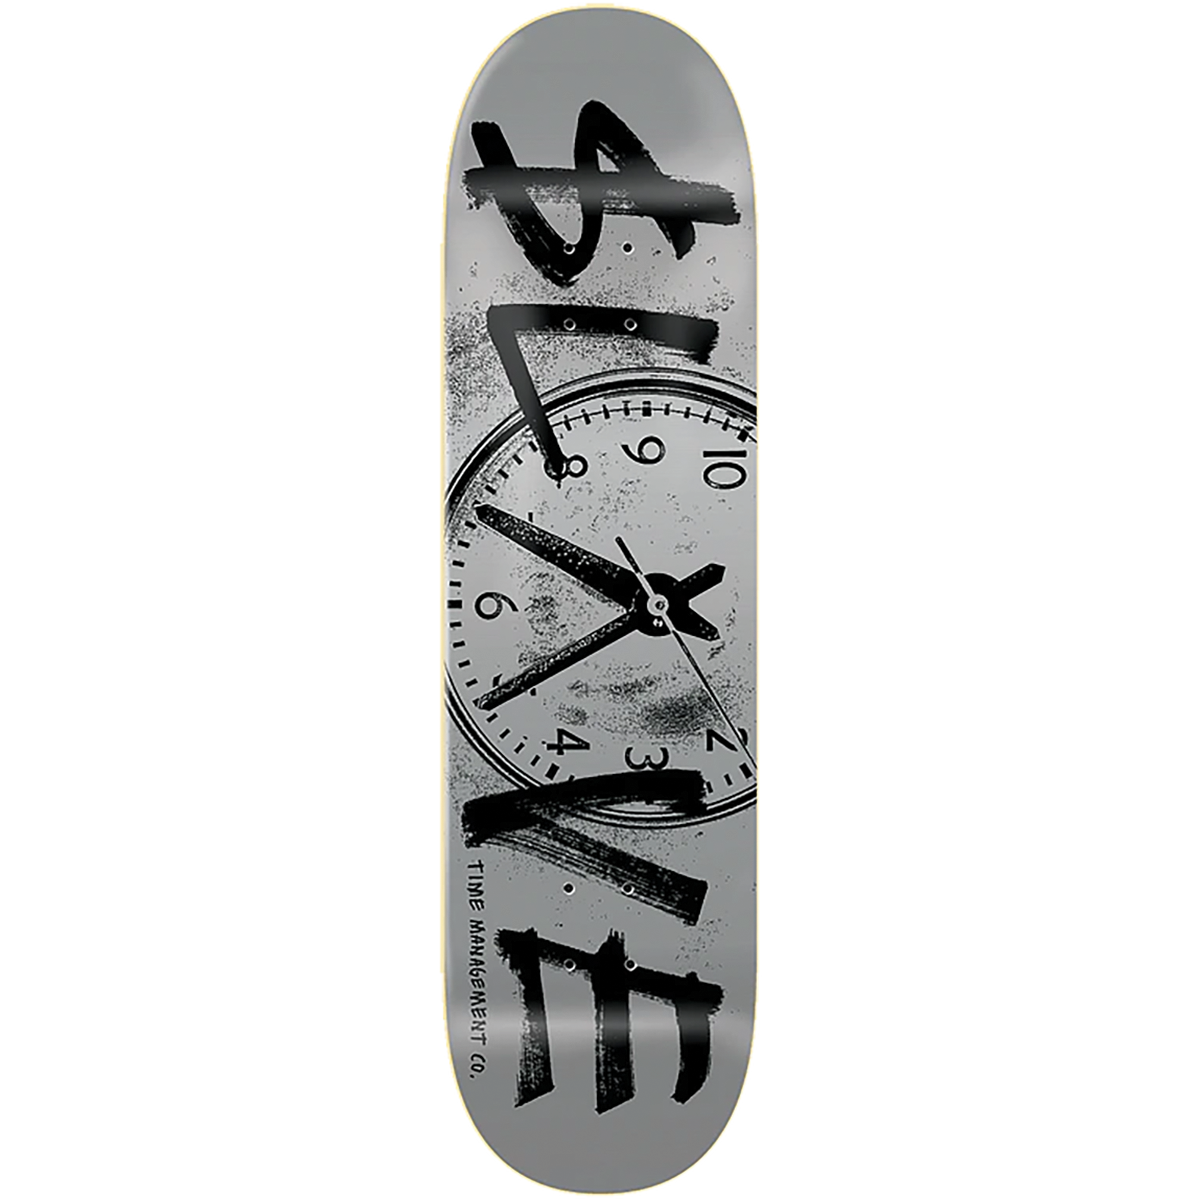 Slave Time Management Skateboard Deck -8.25 Silver/Black DECK ONLY